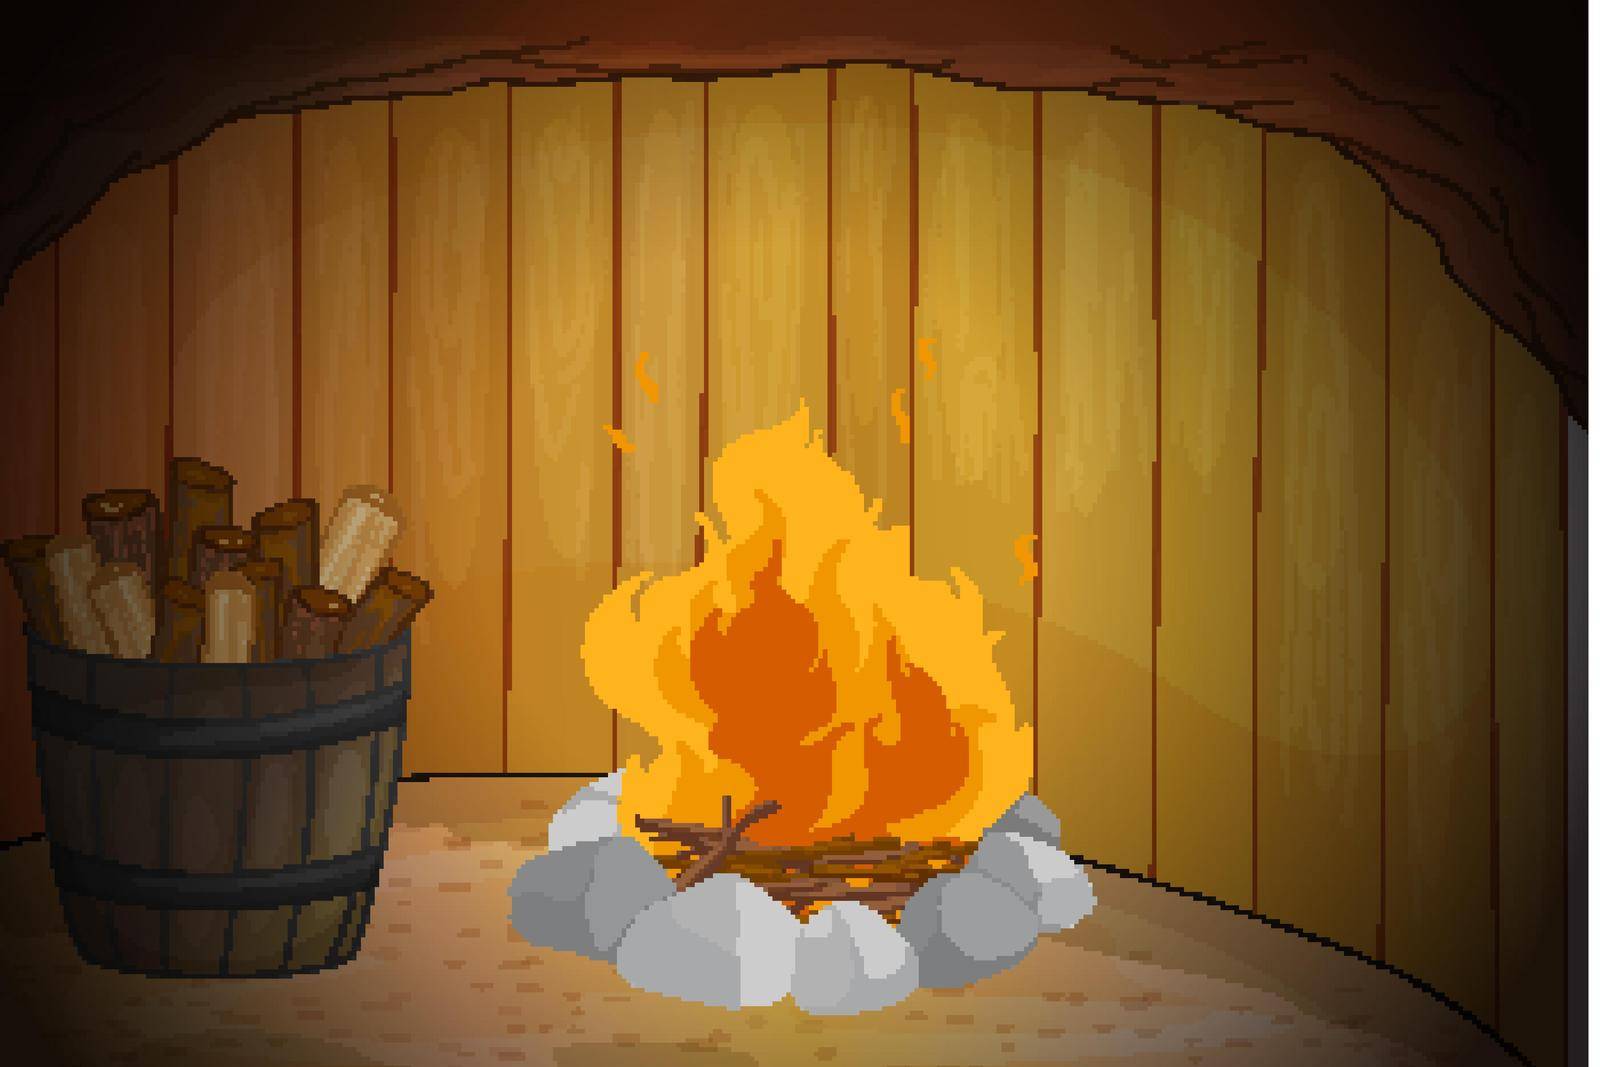 Illustration of fire in a dark den